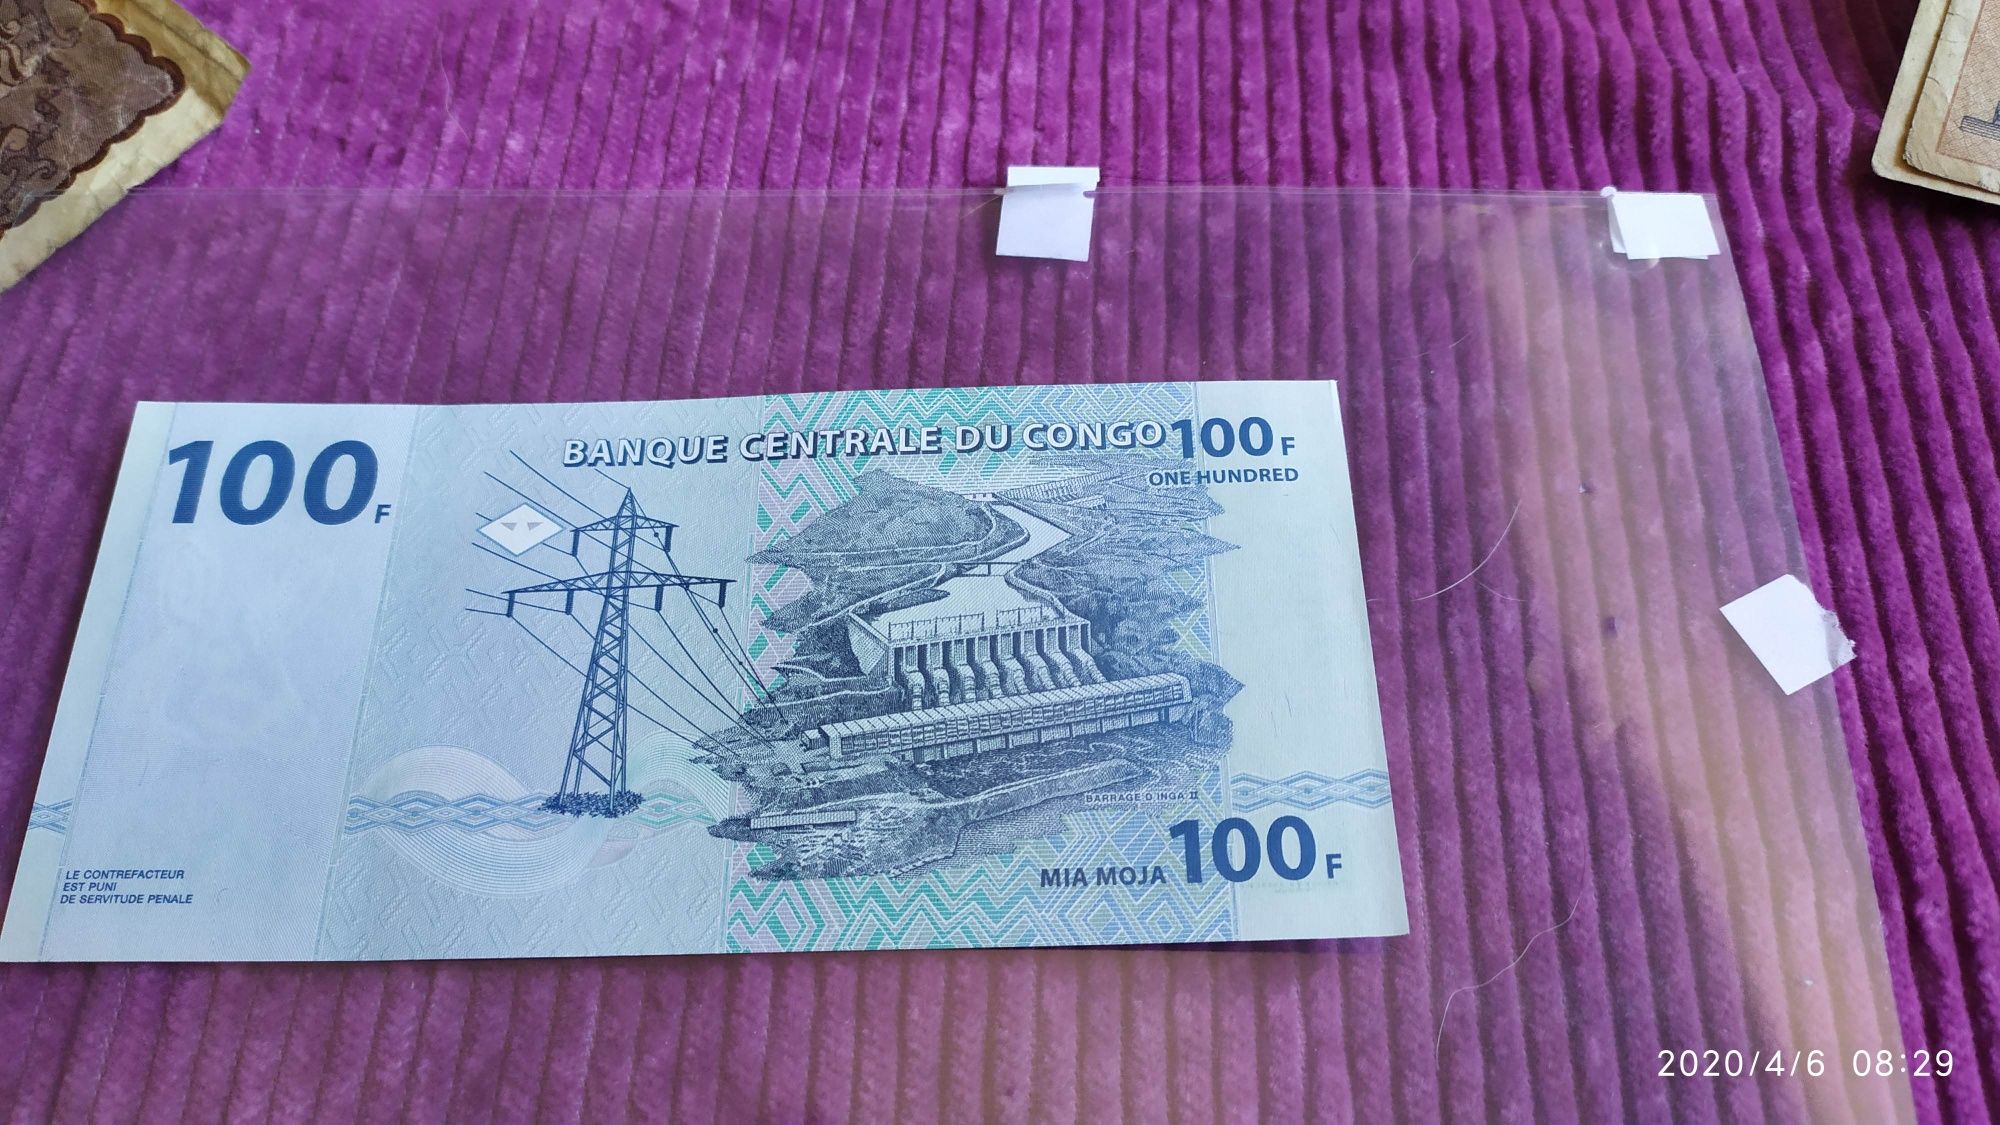 Śliczny banknot ze słoniem na szczęście Kongo 100 Franków